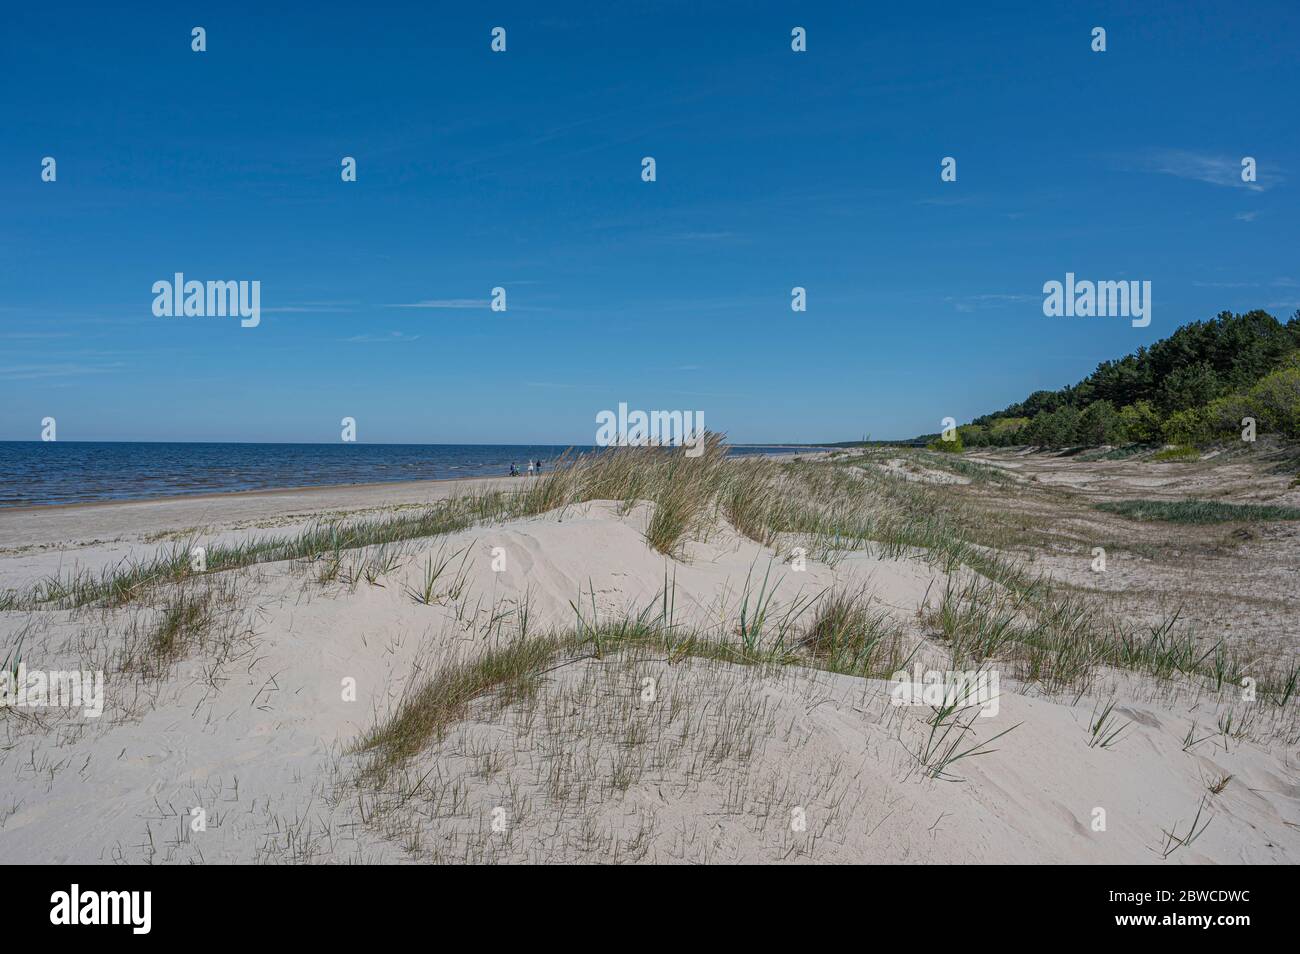 La Duna Bianca e il Baltico vedono in primavera a Jurmala, Lettonia. Spiaggia con sabbia bianca e mare blu/oceano. Spiaggia con pineta e erba verde Foto Stock